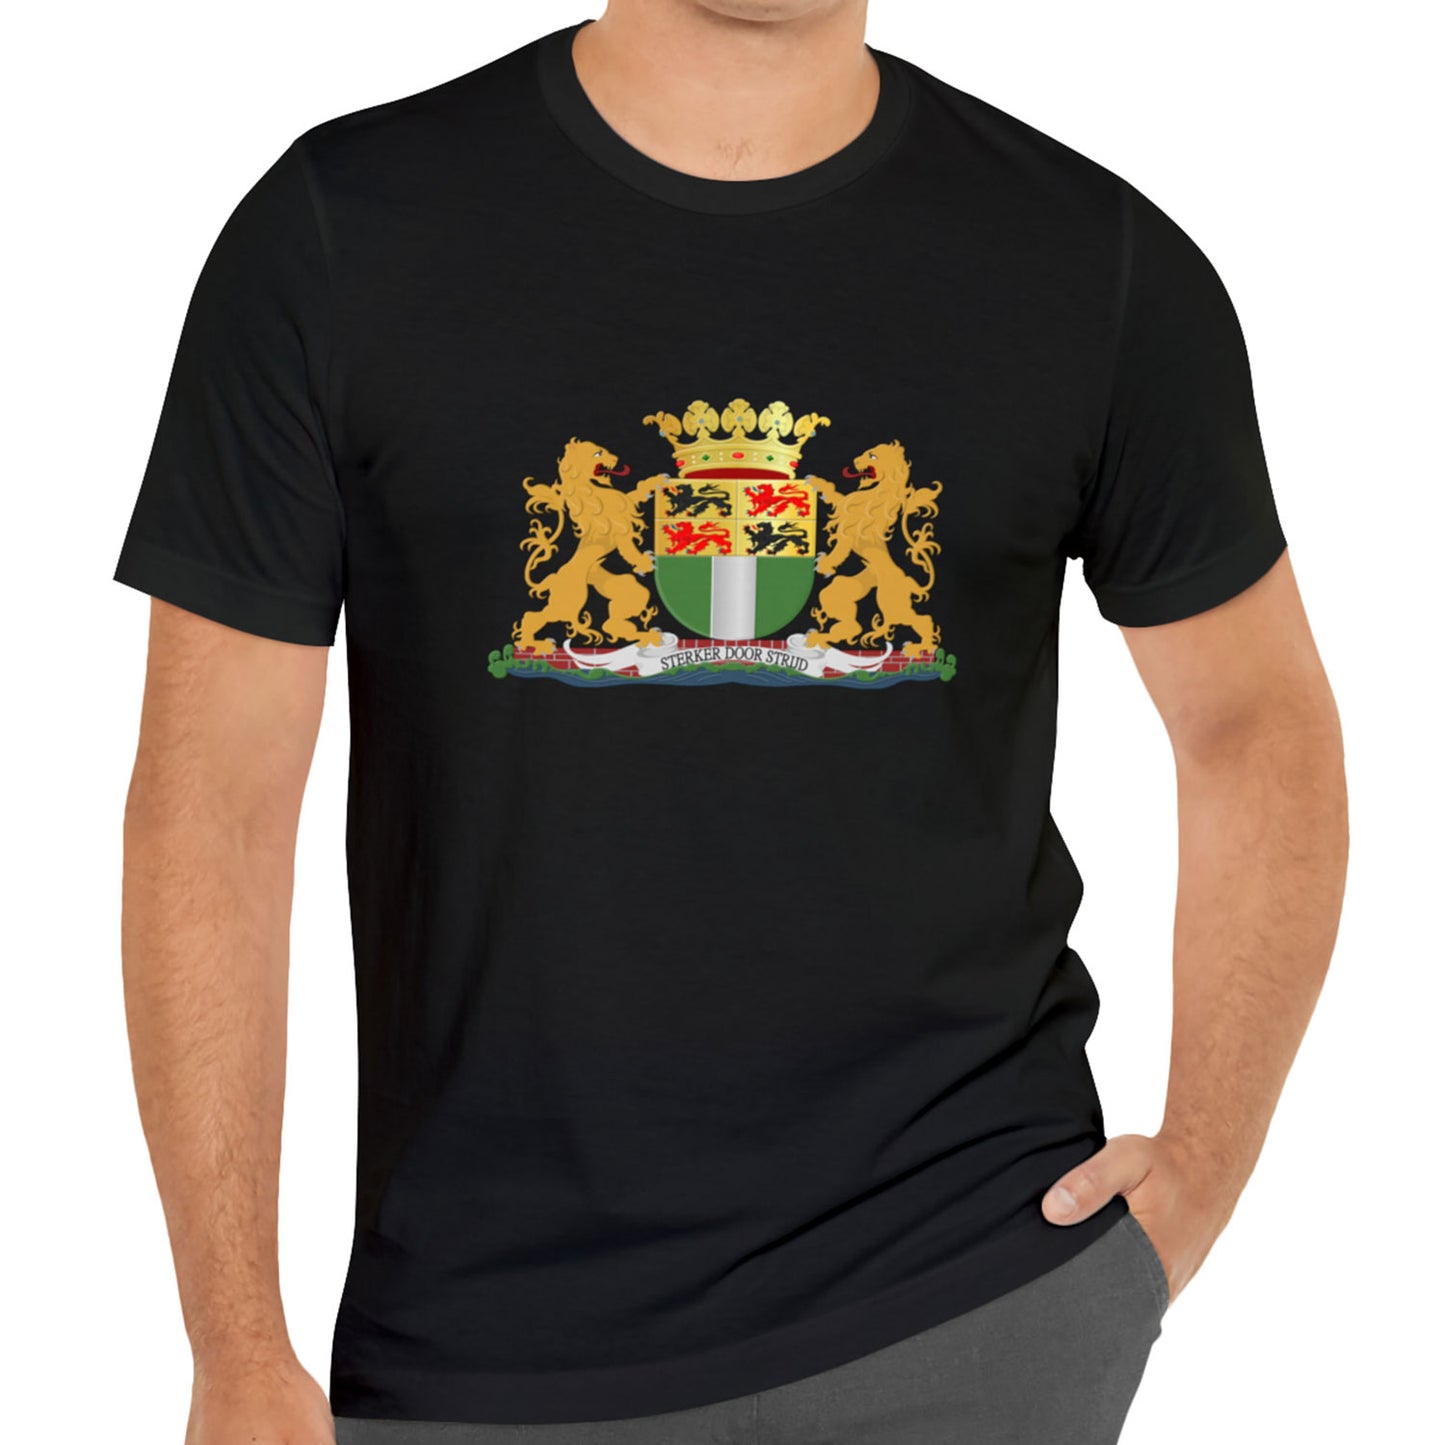 Zwart t-shirt met het wapen van Rotterdam